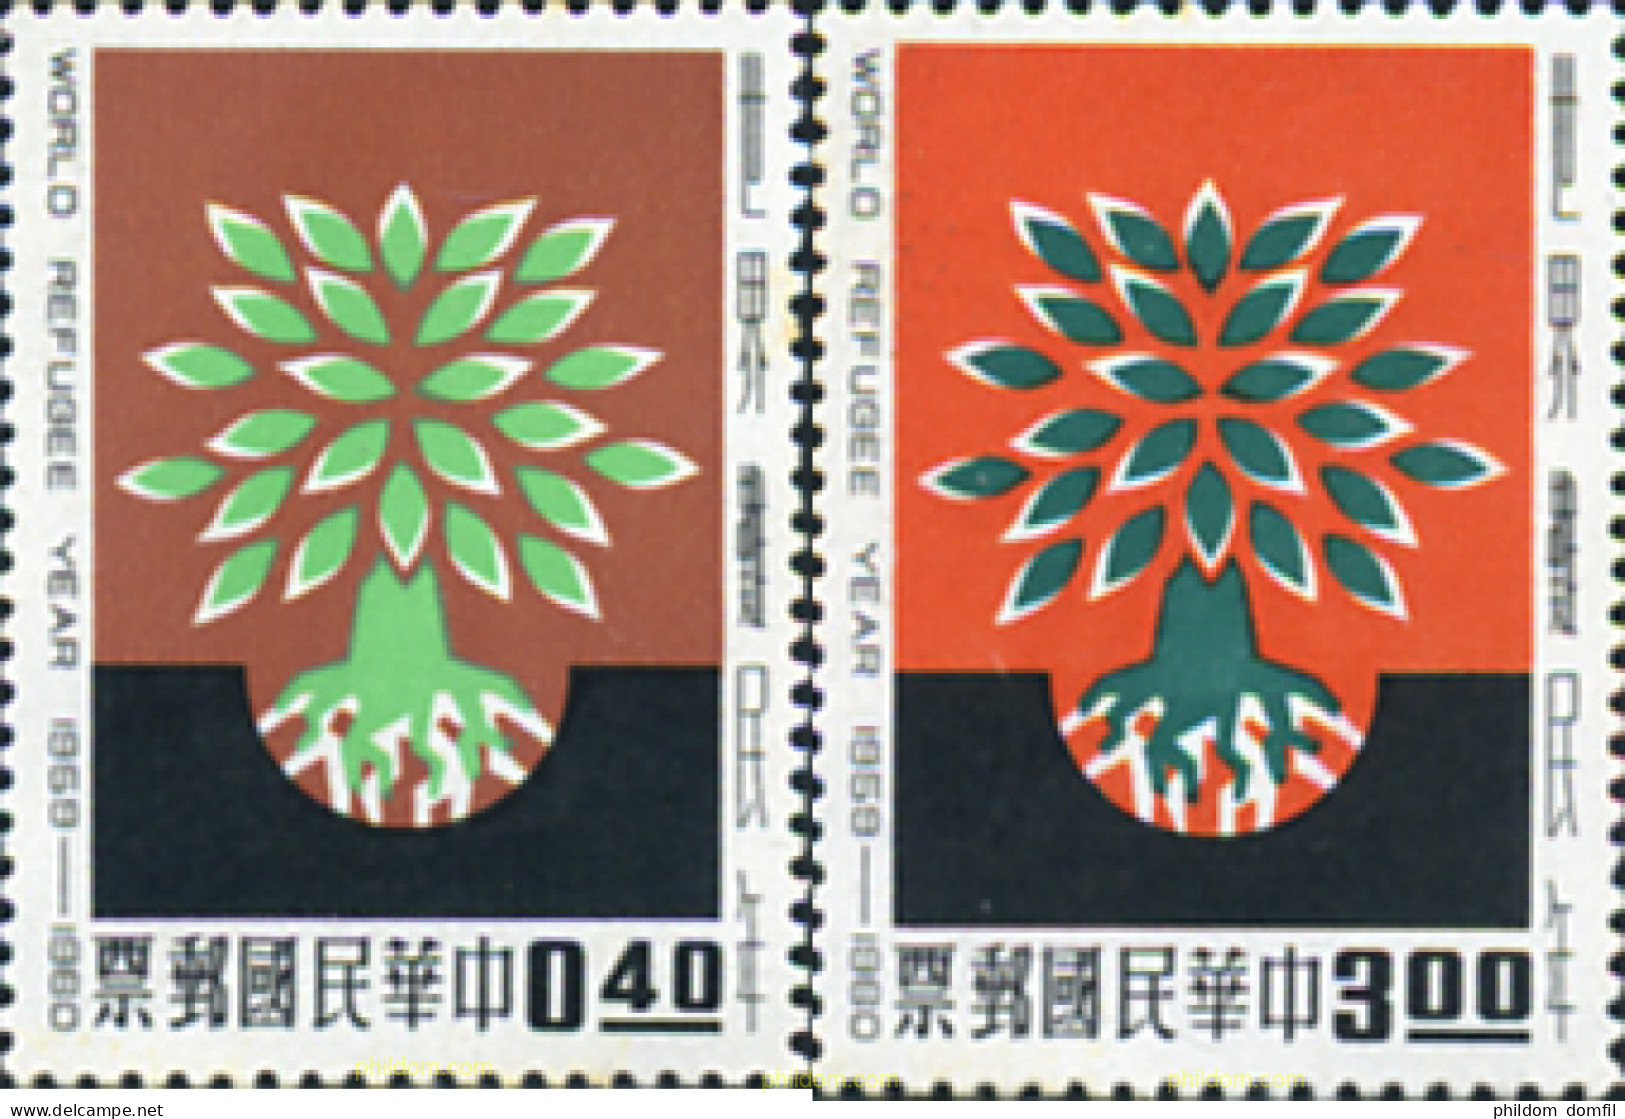 314562 MNH CHINA. FORMOSA-TAIWAN 1960 AÑO DE LOS REFUGIADOS - Ungebraucht